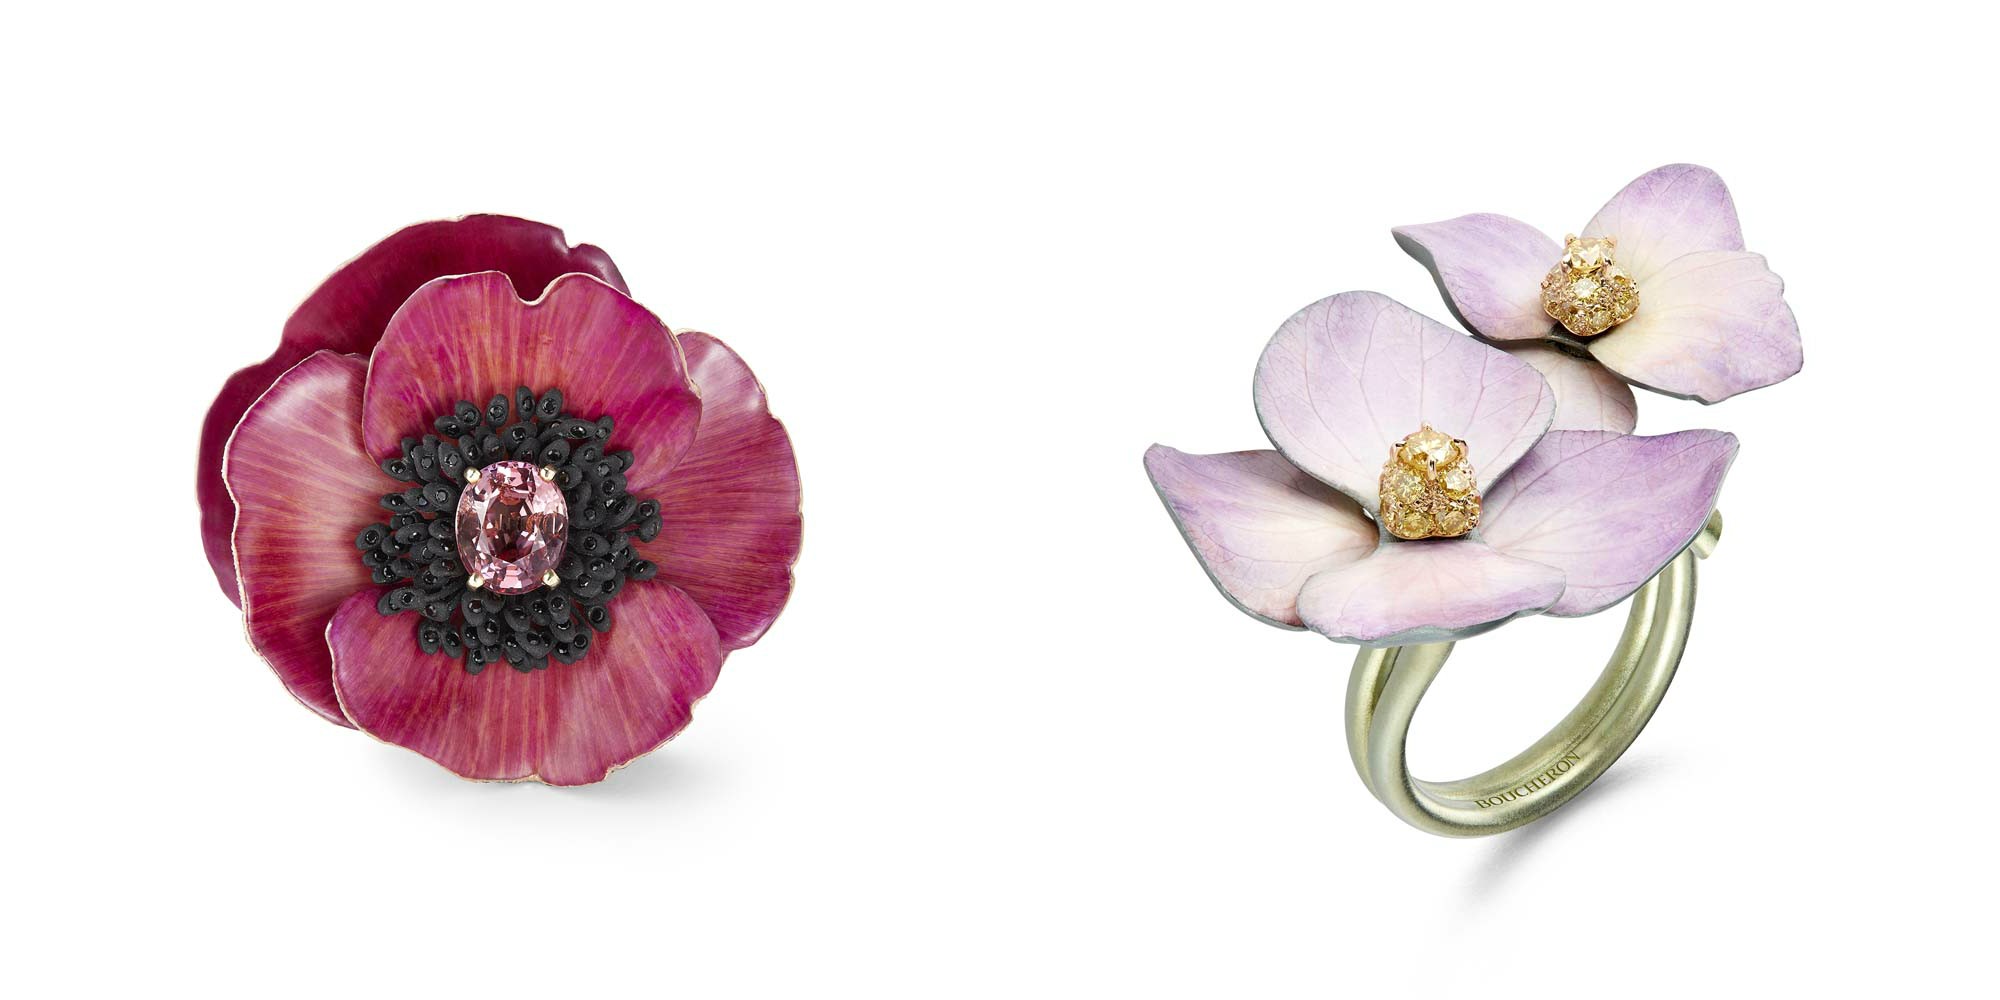 Boucheron сохранили лепестки живых цветов в коллекции высокого ювелирного искусства